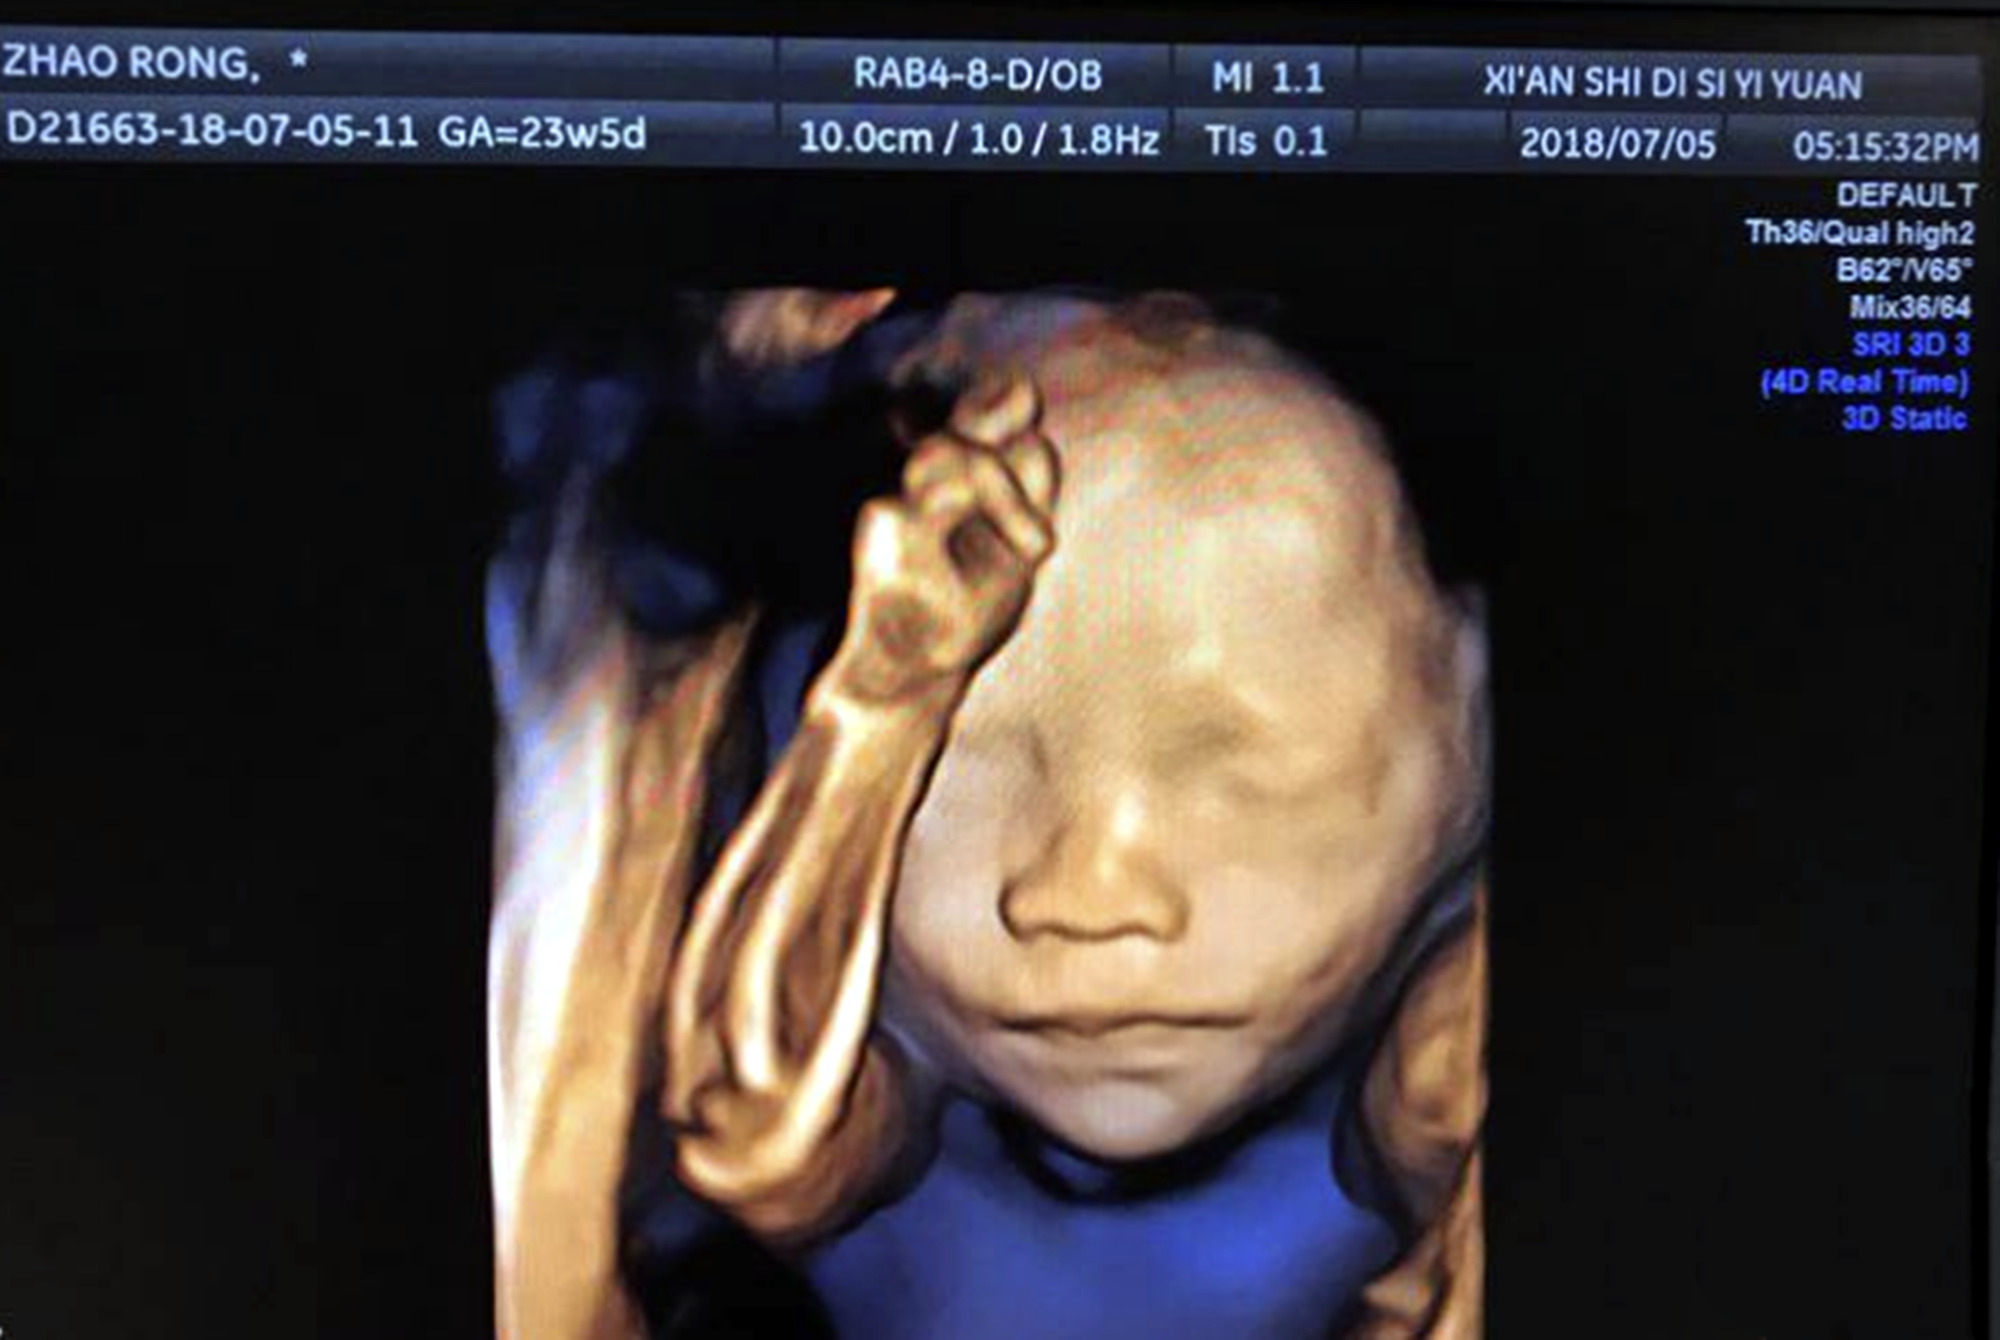 胎儿四维照鼻梁塌陷,宝爸质疑妈妈基因伪劣,出生后却很惊喜